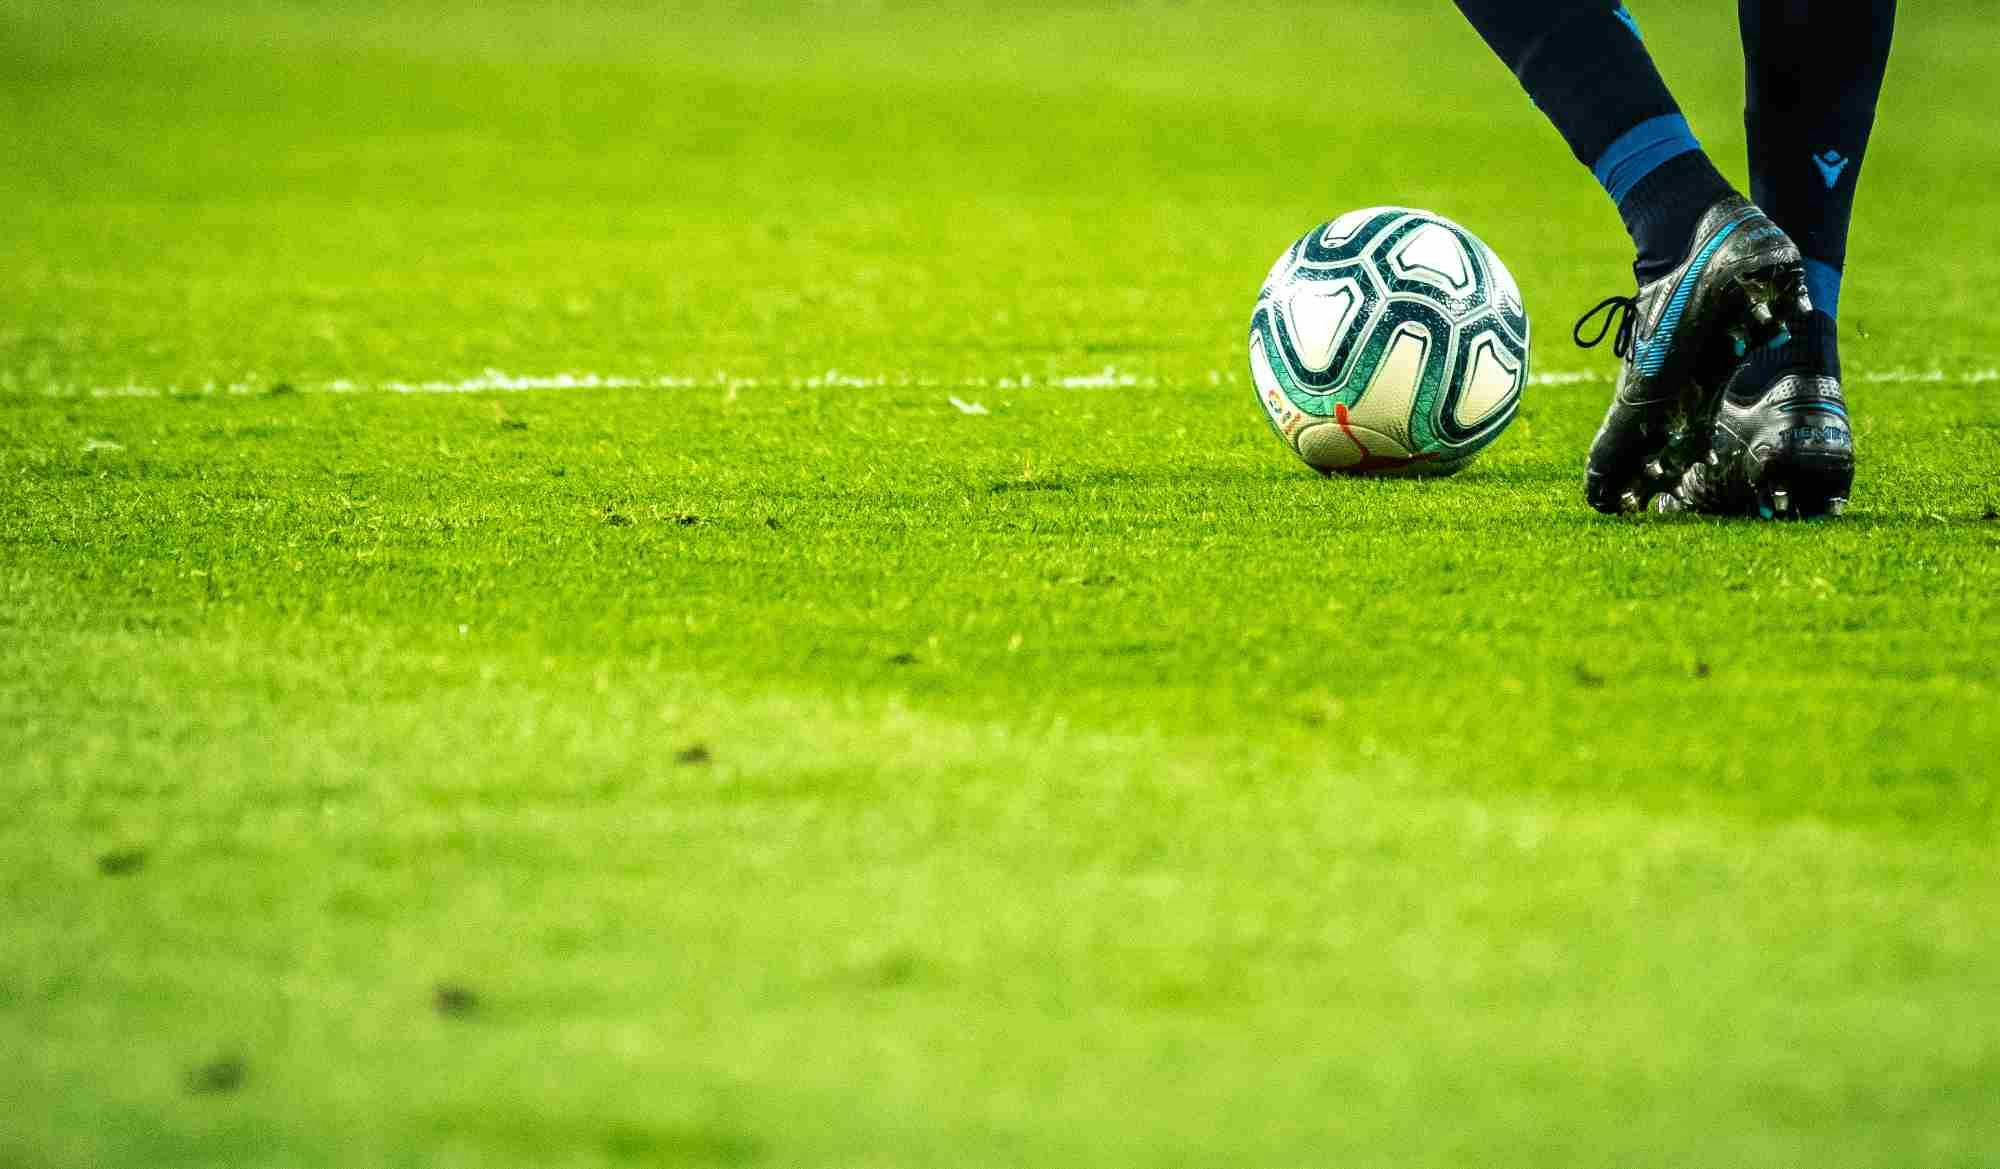 Imagem de um jogador de futebol chutando uma bola em um campo, para ilustrar a aula sobre o que são apostas esportivas